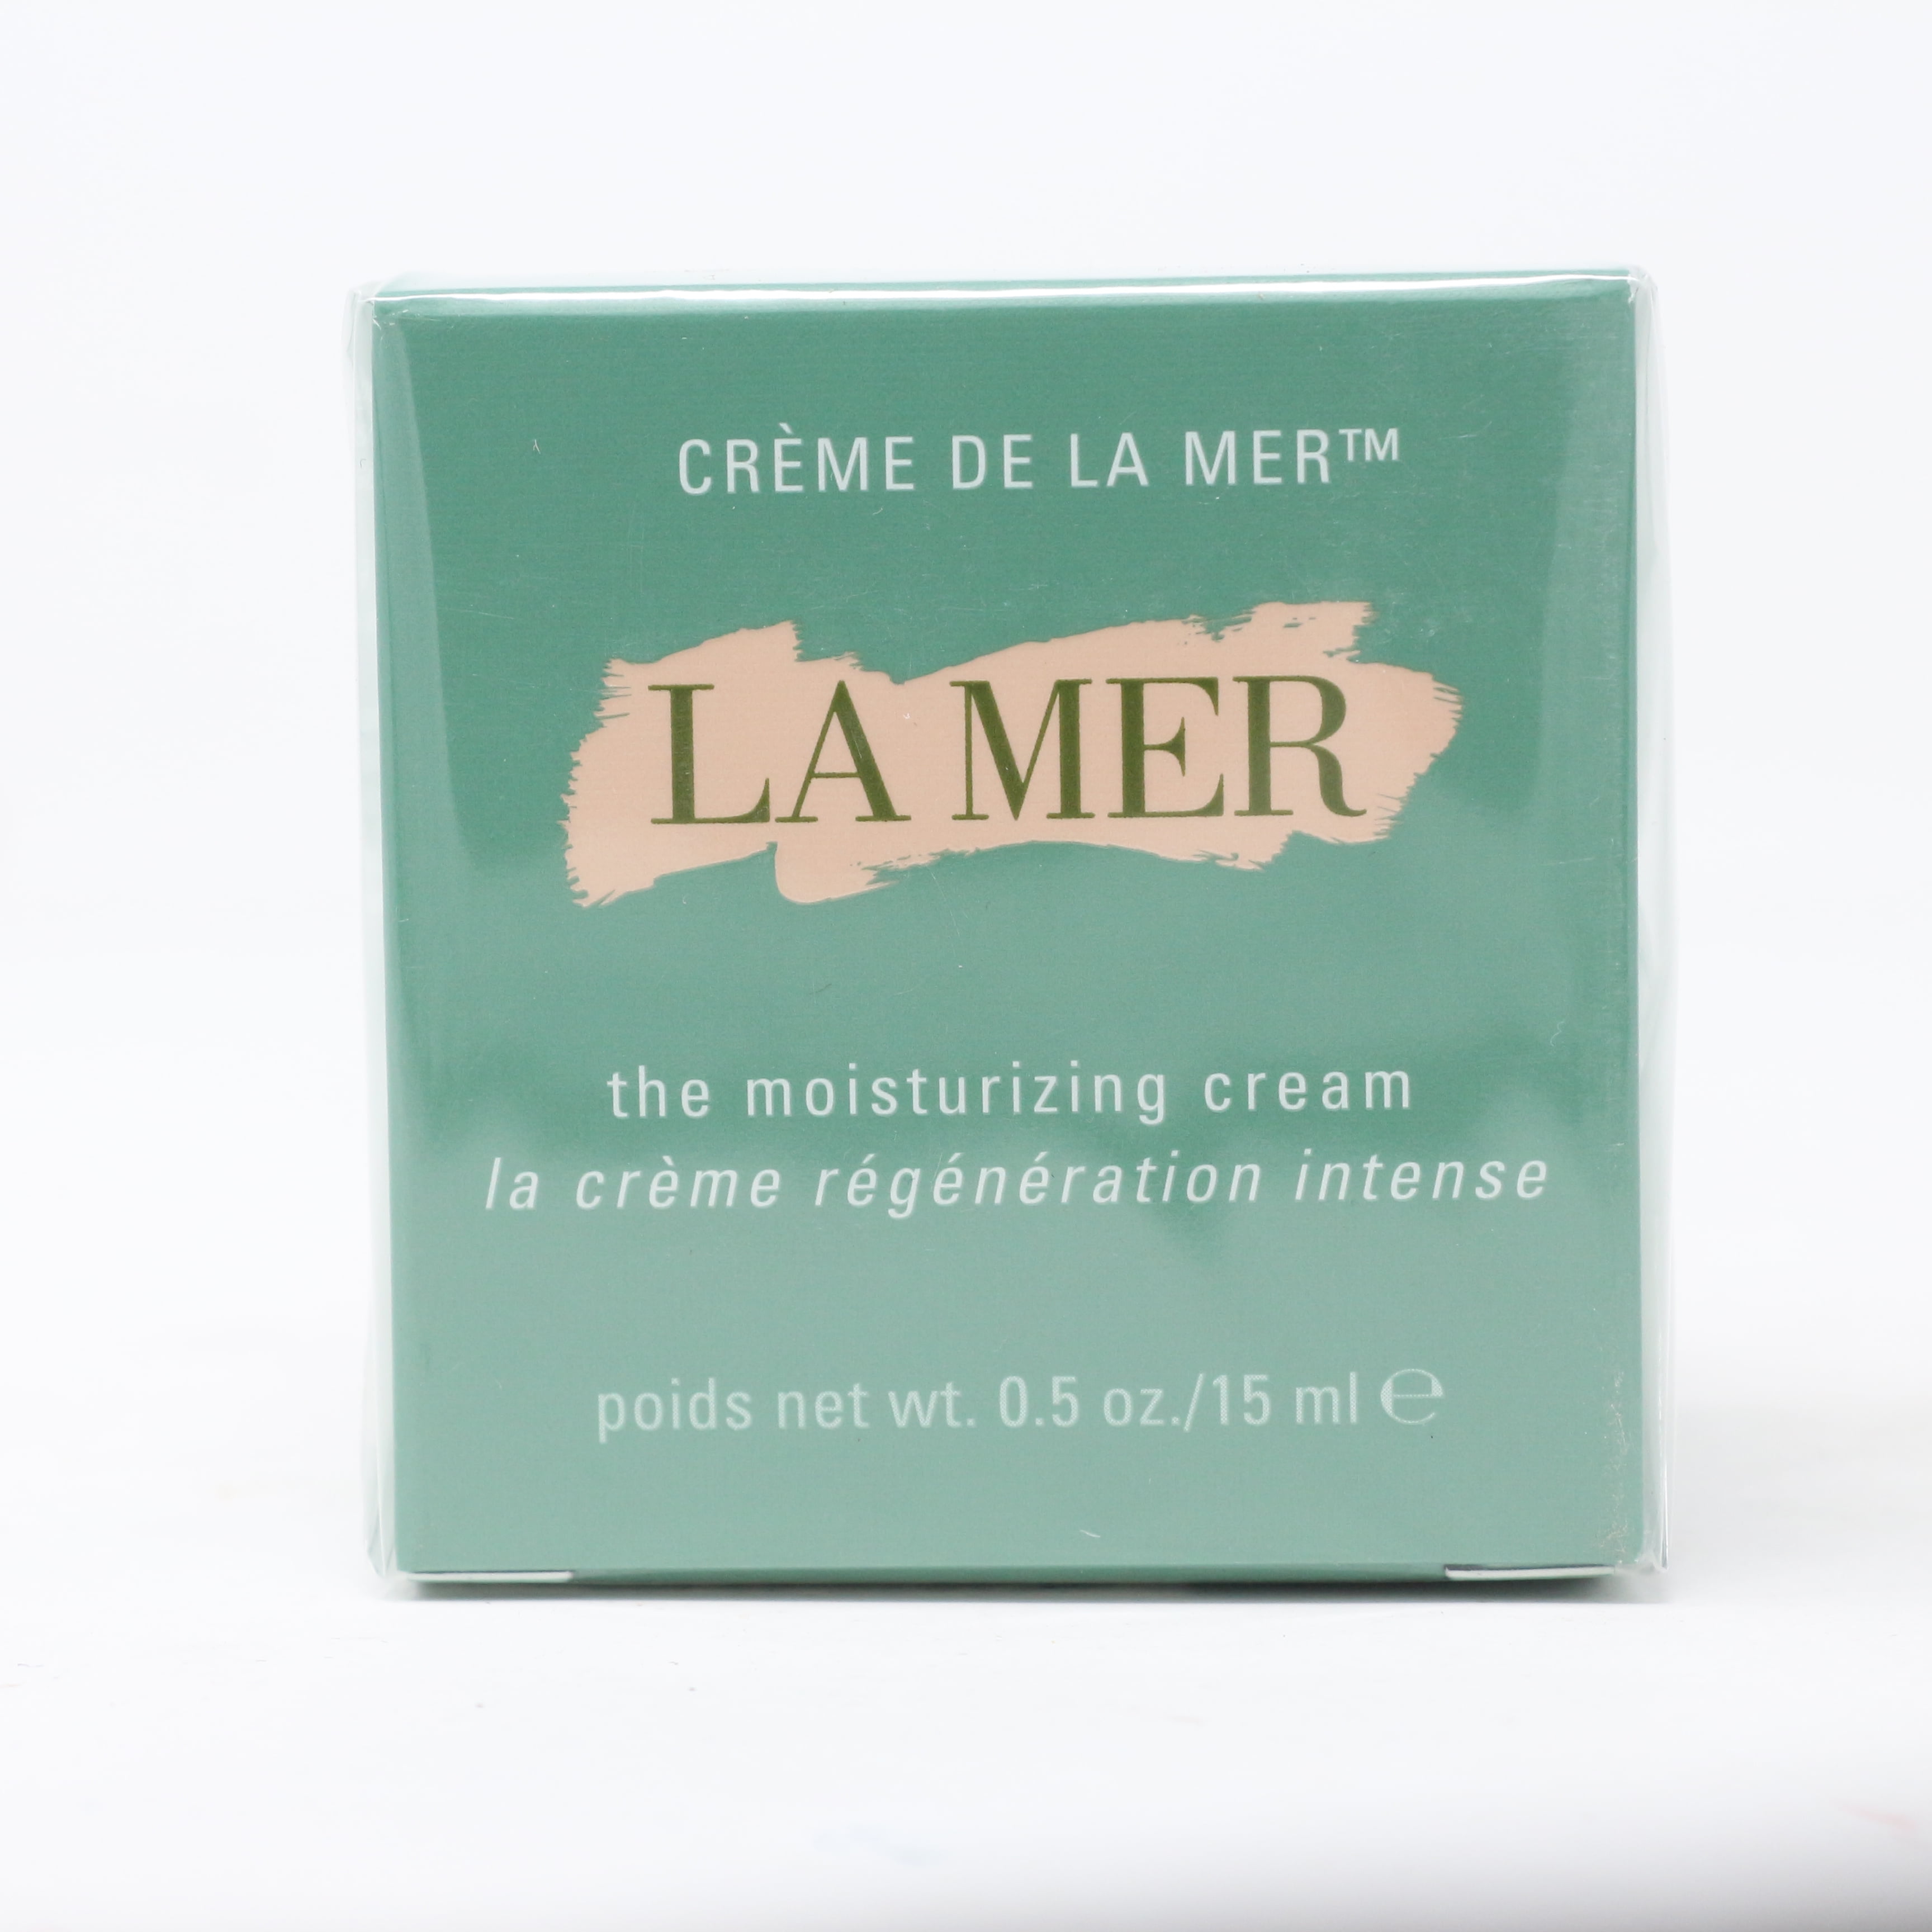 La Mer Crème de la Mer Moisturizing Cream - 0.5 oz jar